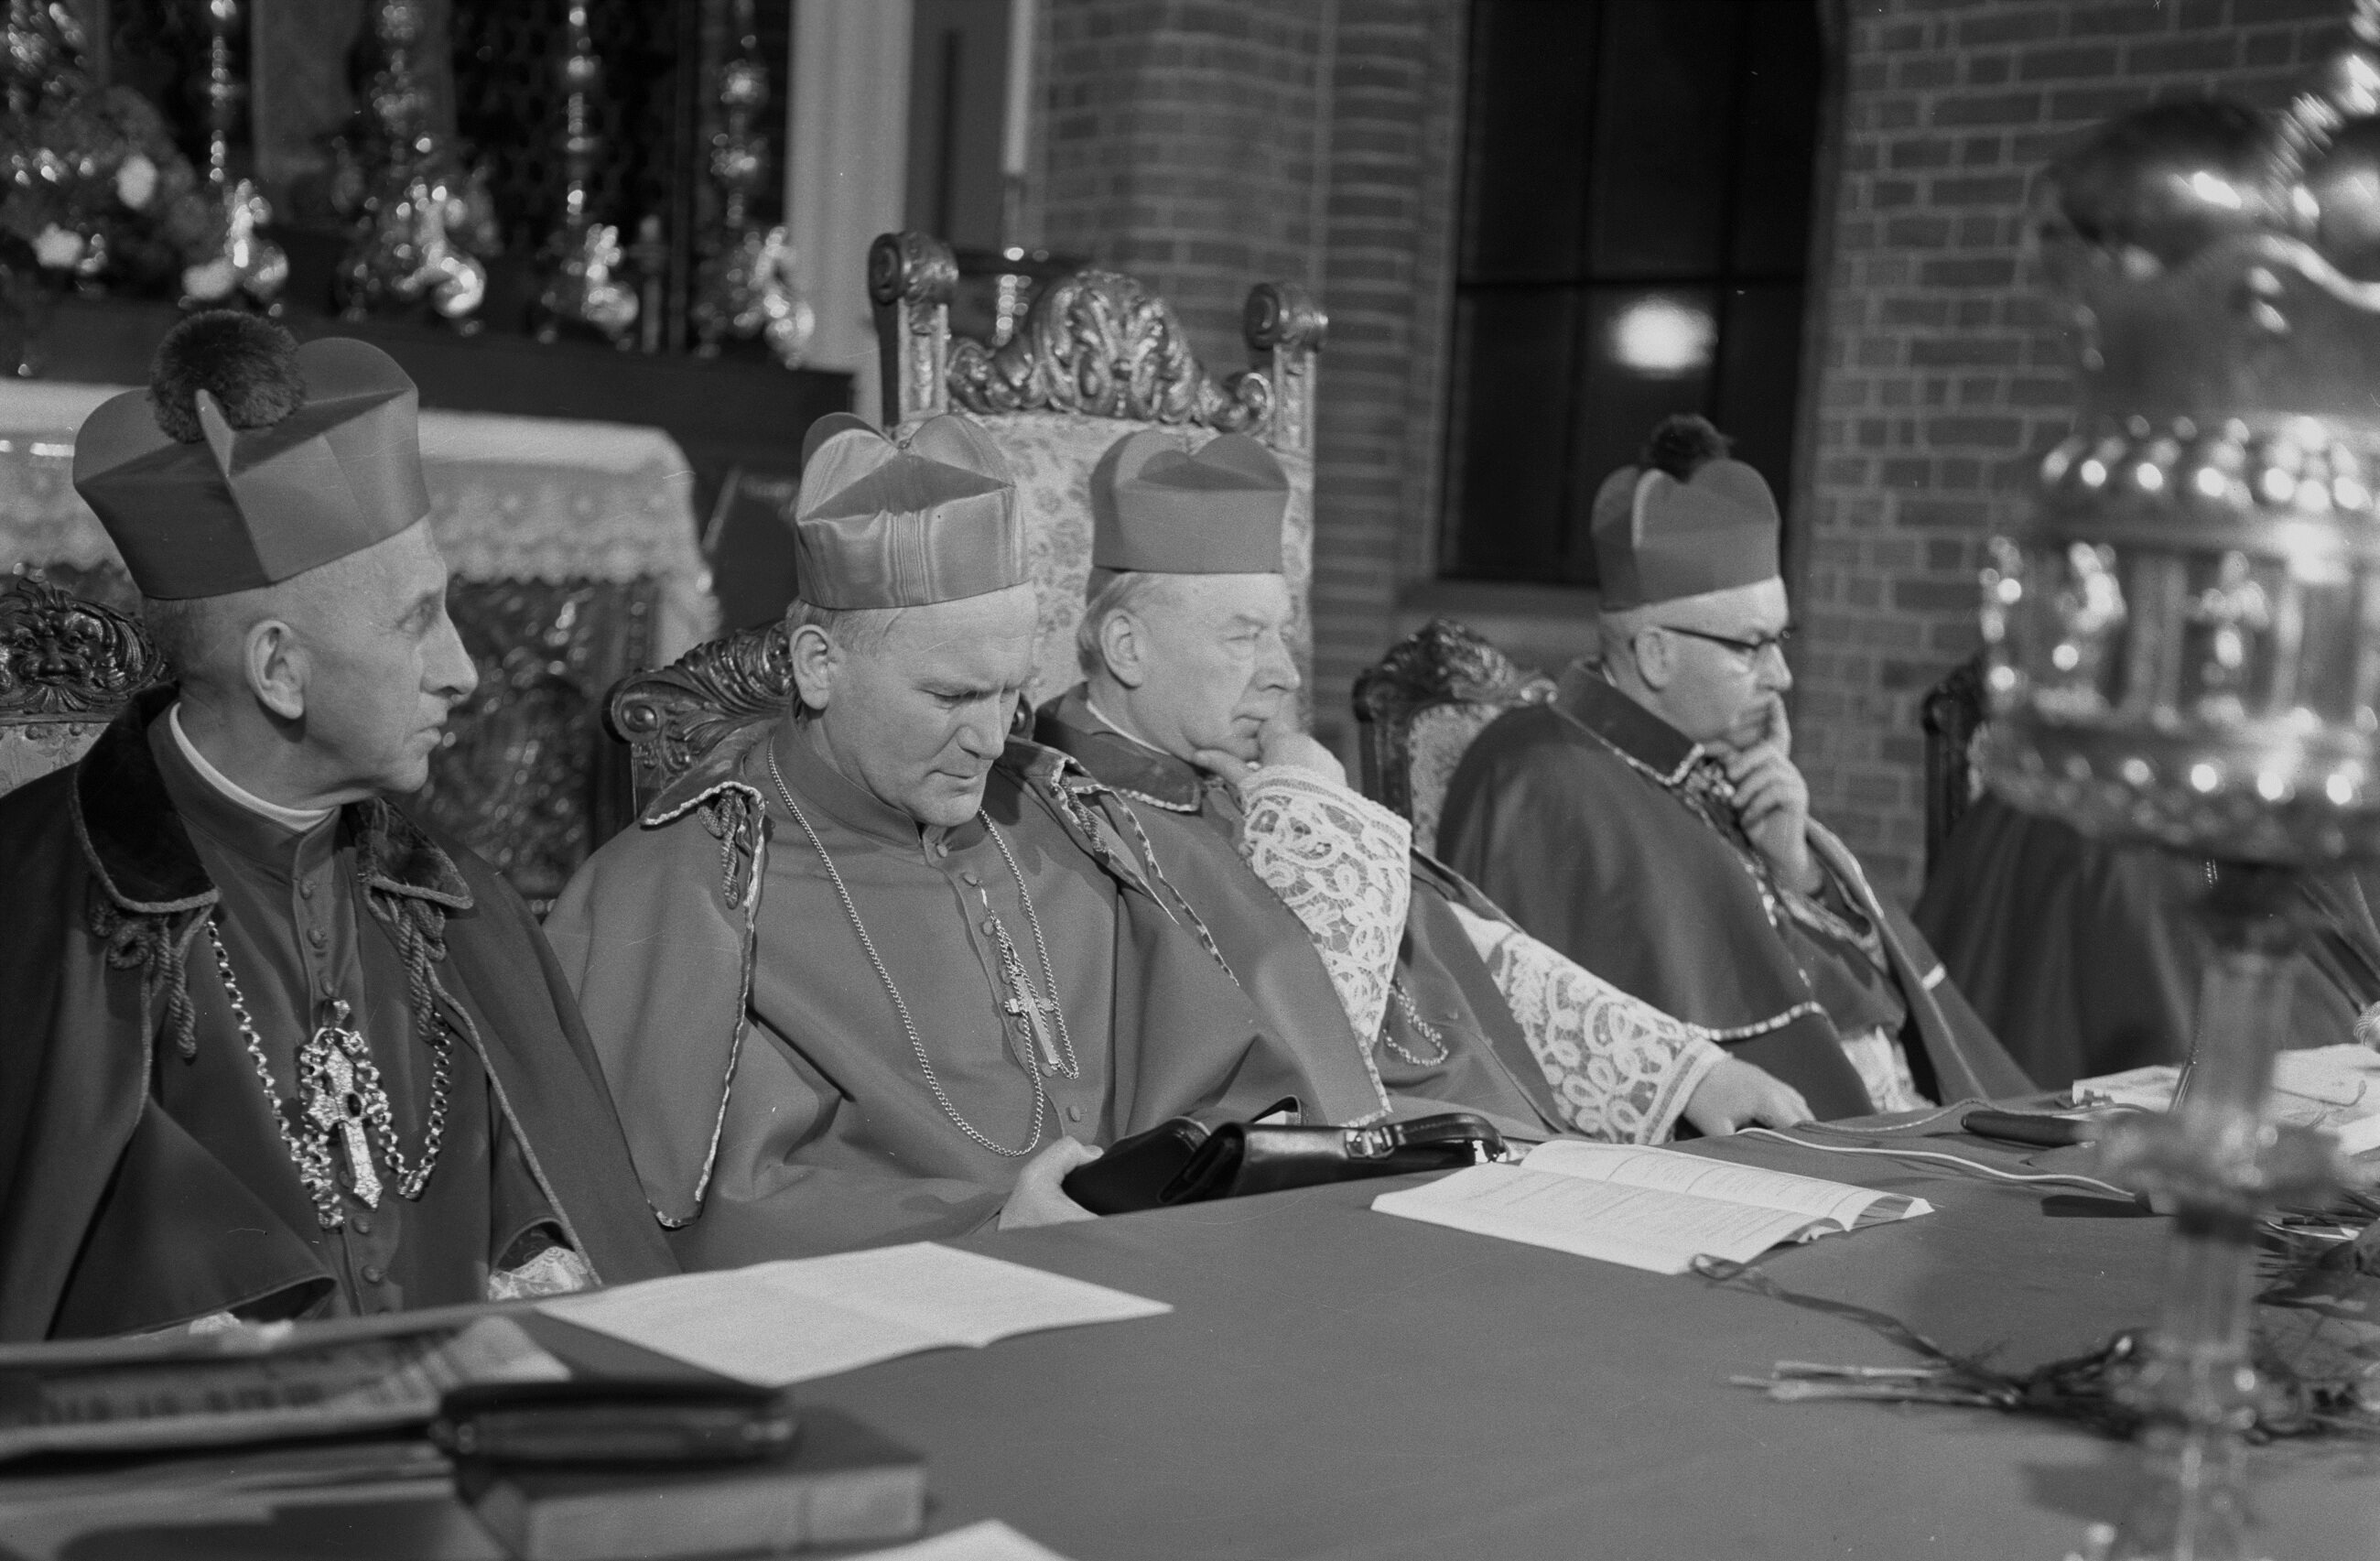 Jakie hasło przewodnie przyjął Karol Wojtyła jako biskup?